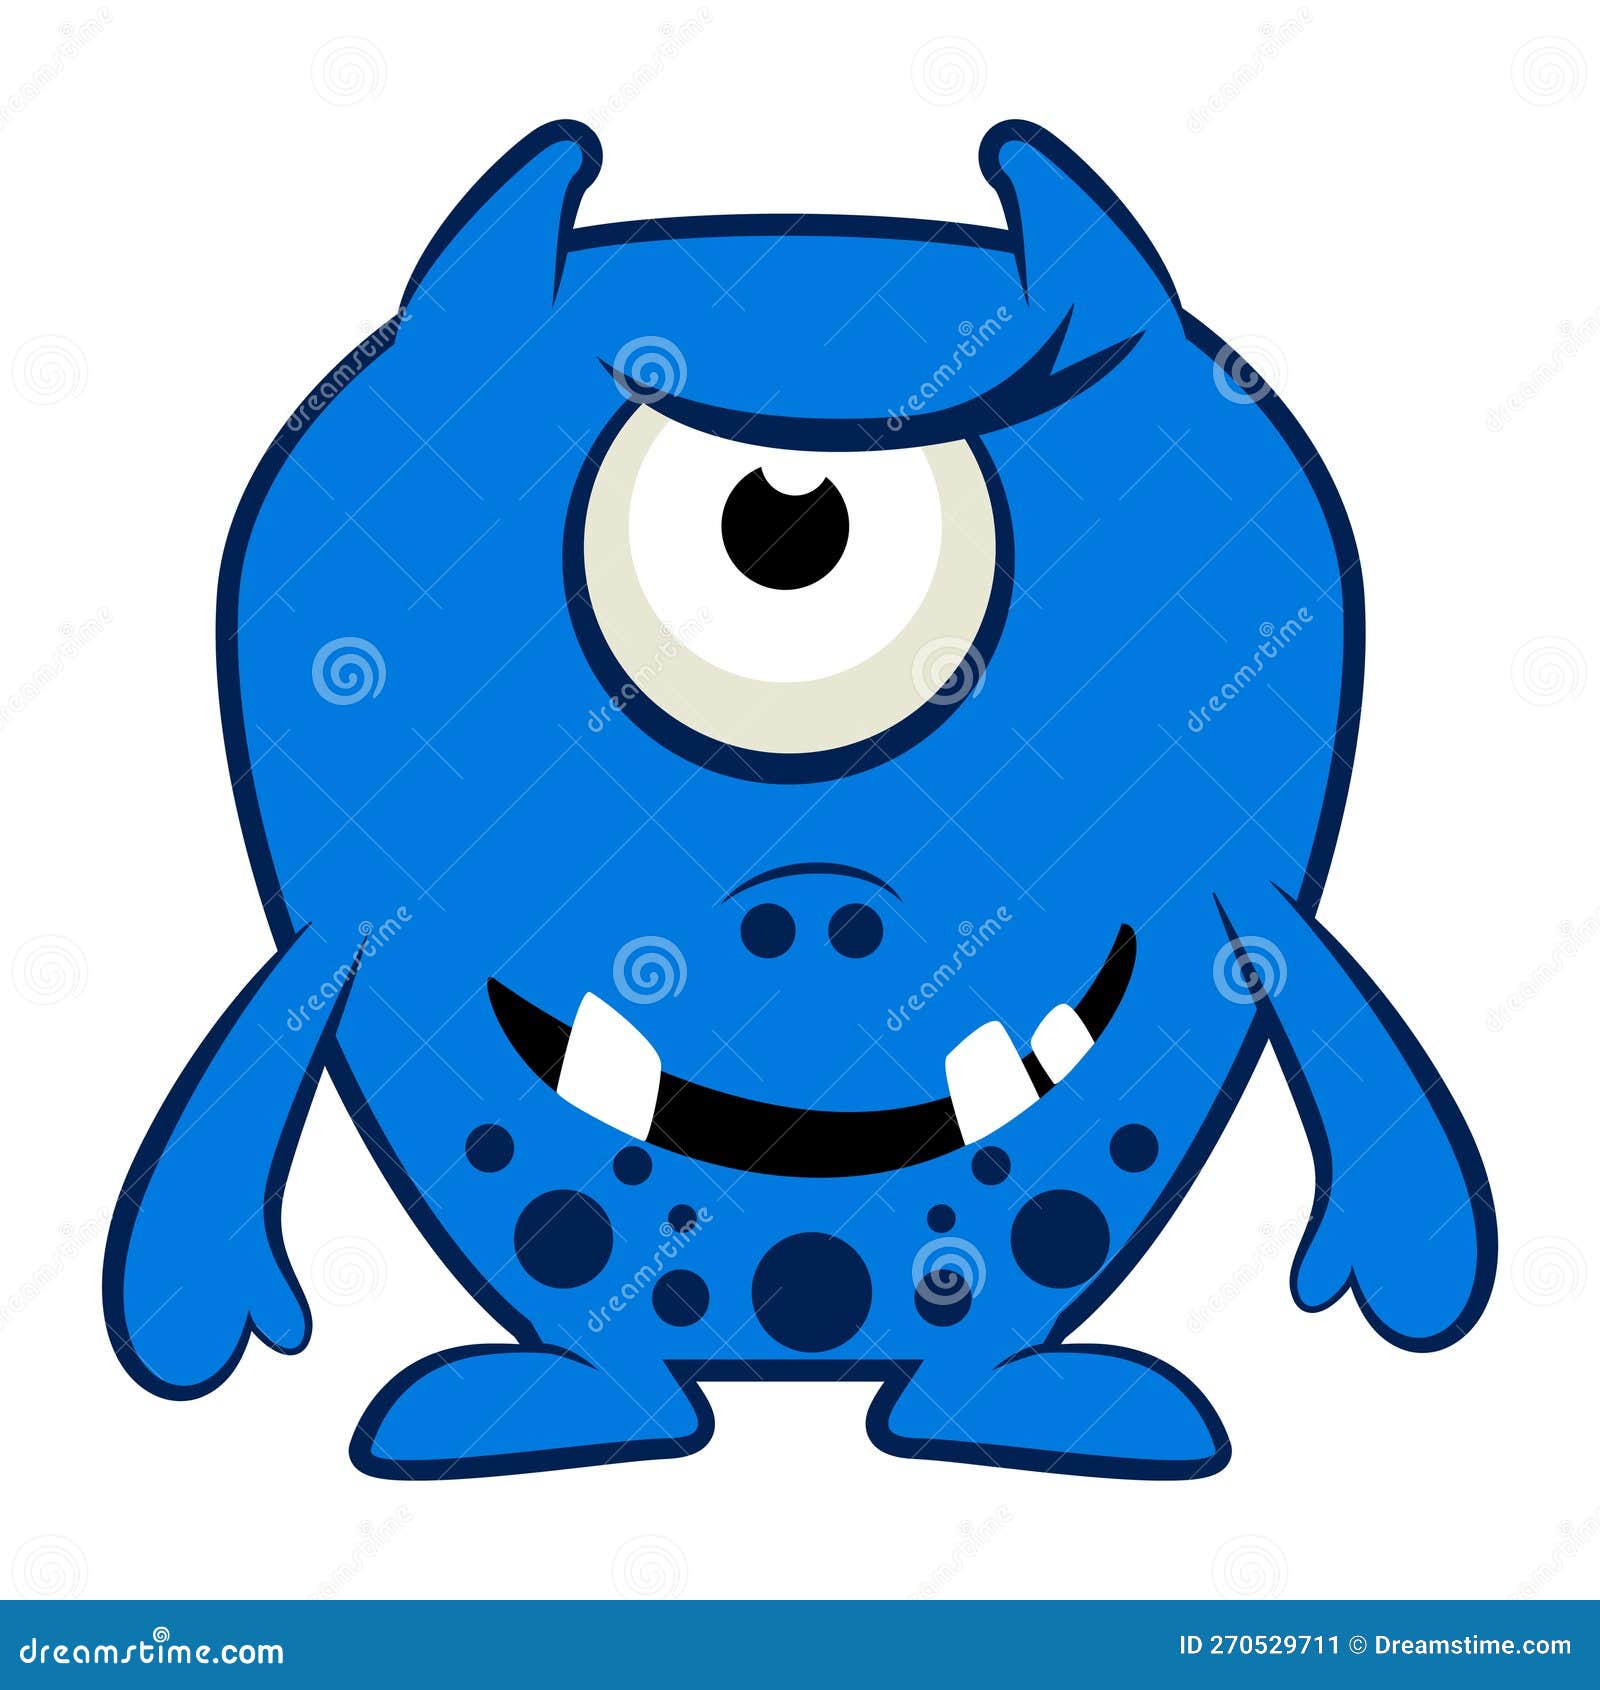 Desenho de monstro azul fofo - Fotos de arquivo #28011989